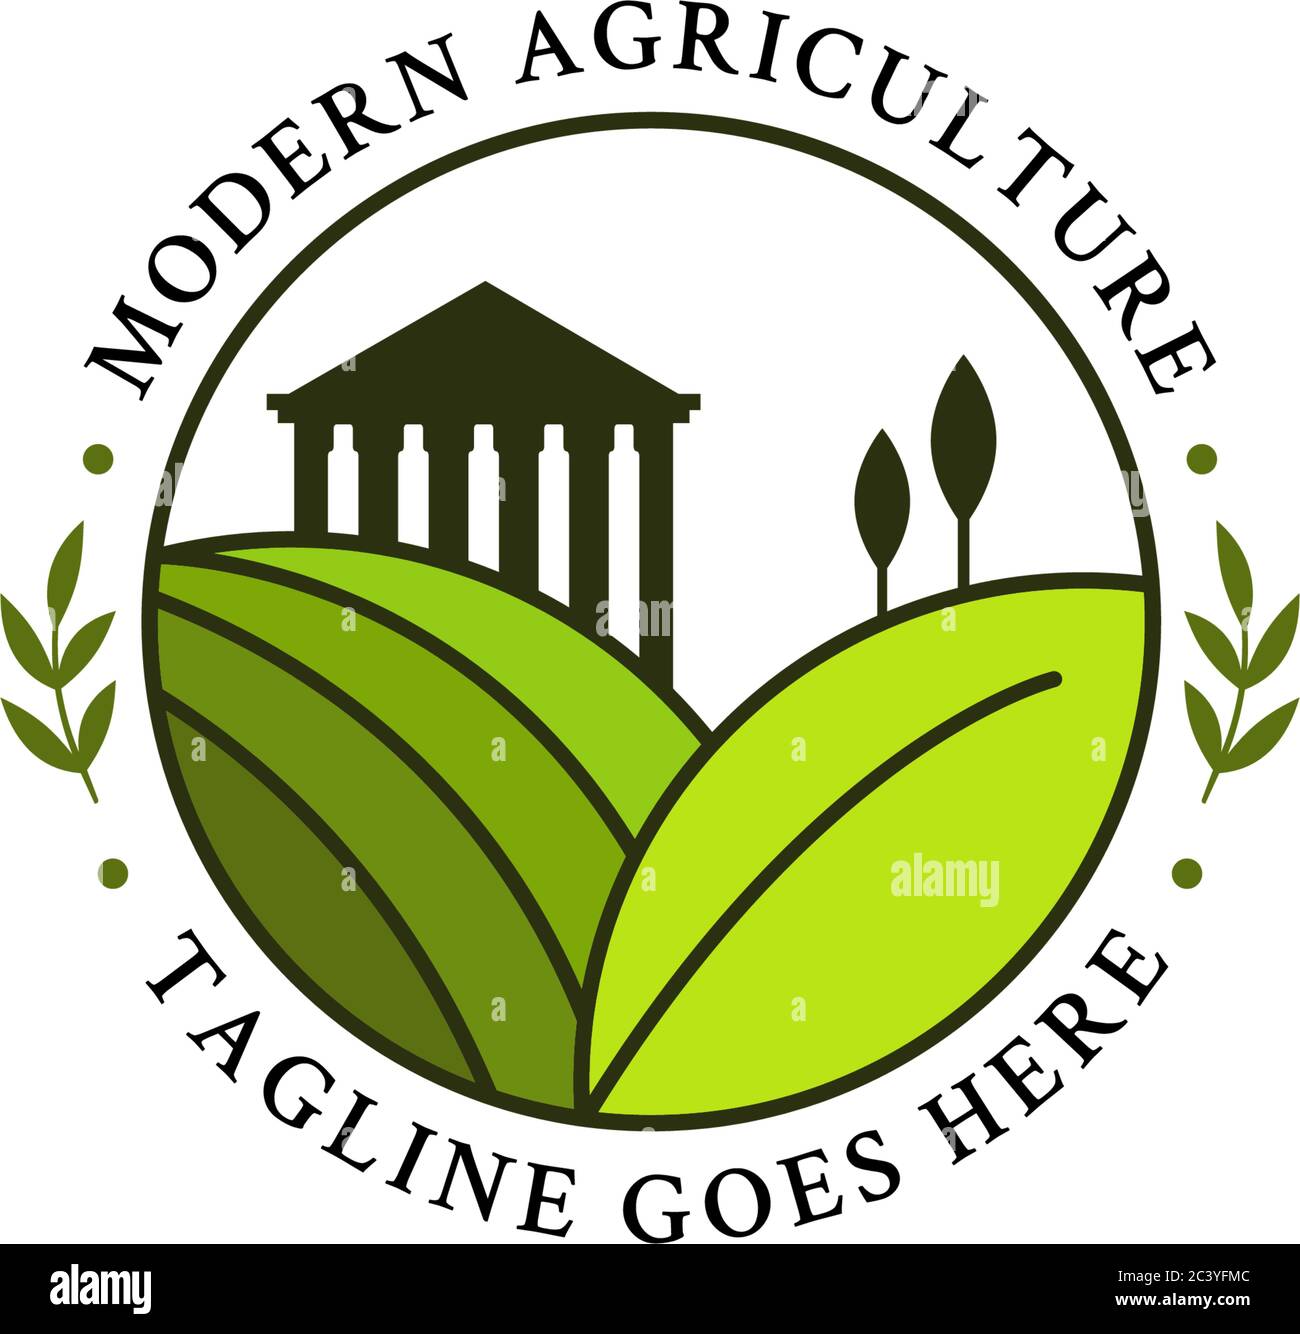 Greek agriculture logo design in the circle, modern farm logo vector Stock Vector